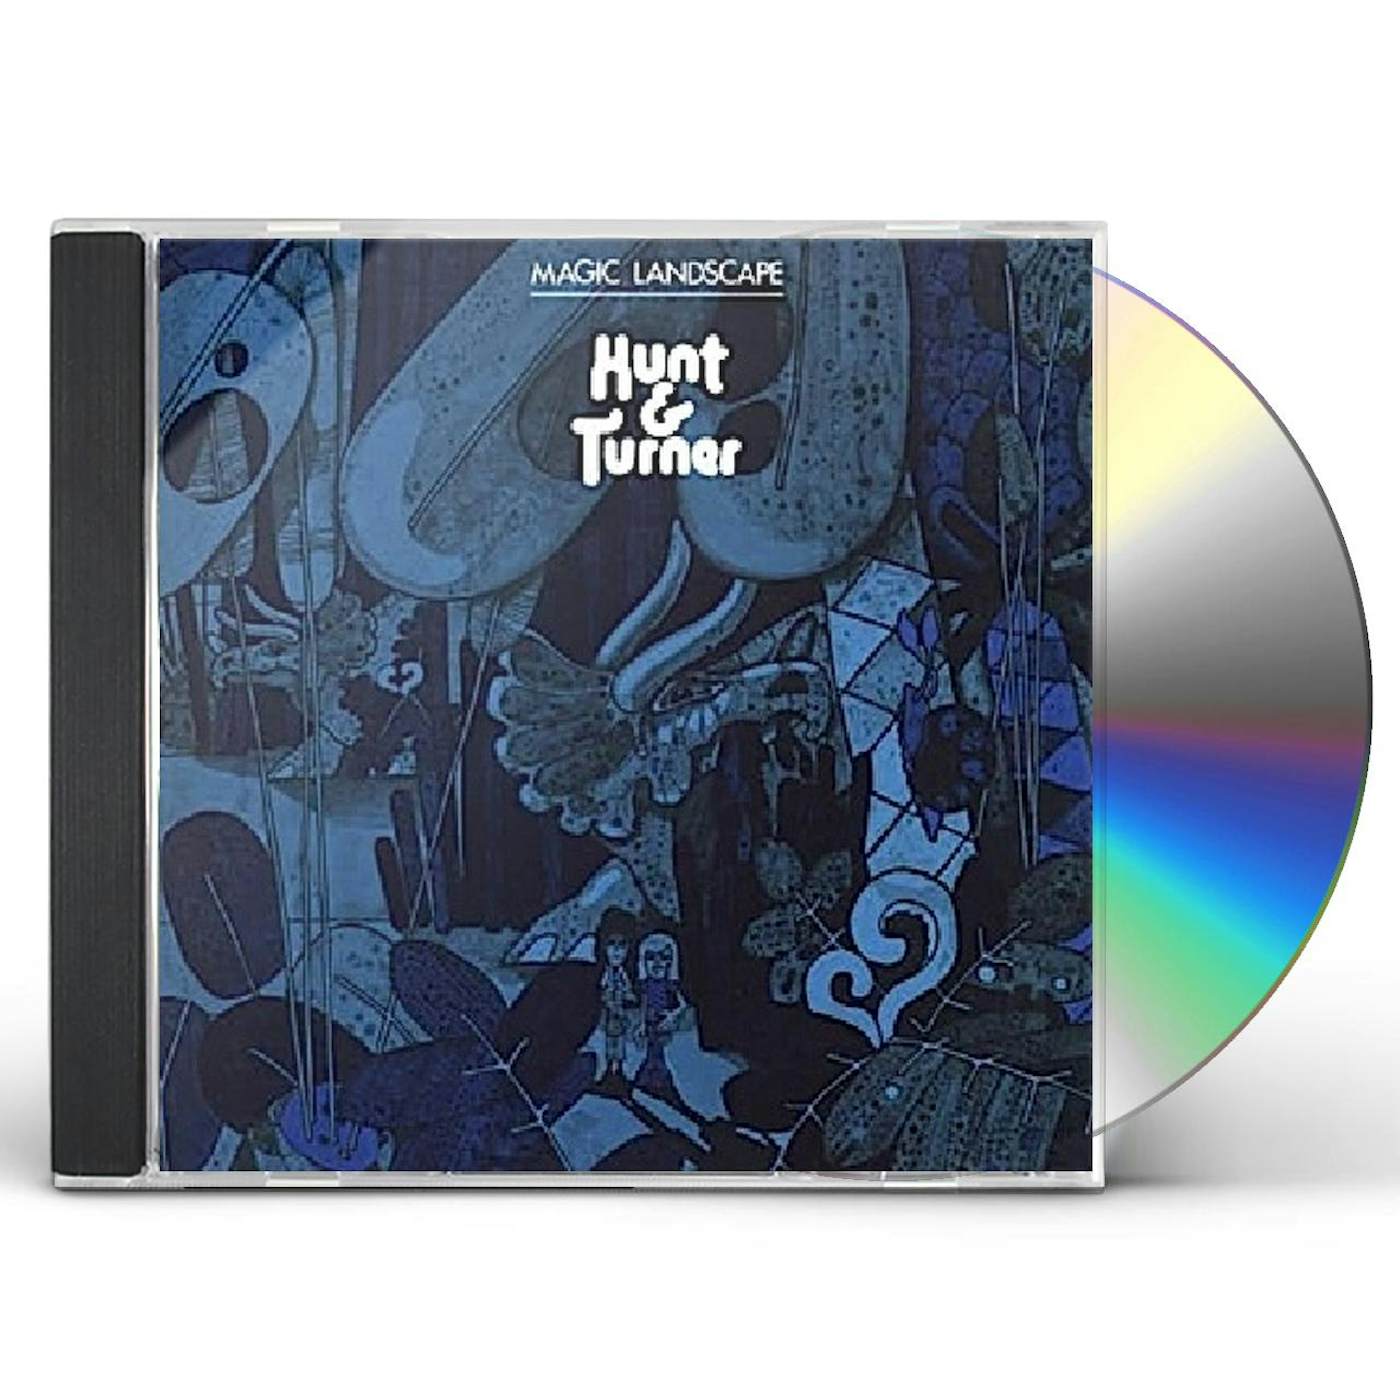 Hunt & Turner MAGIC LANDSCAPE CD